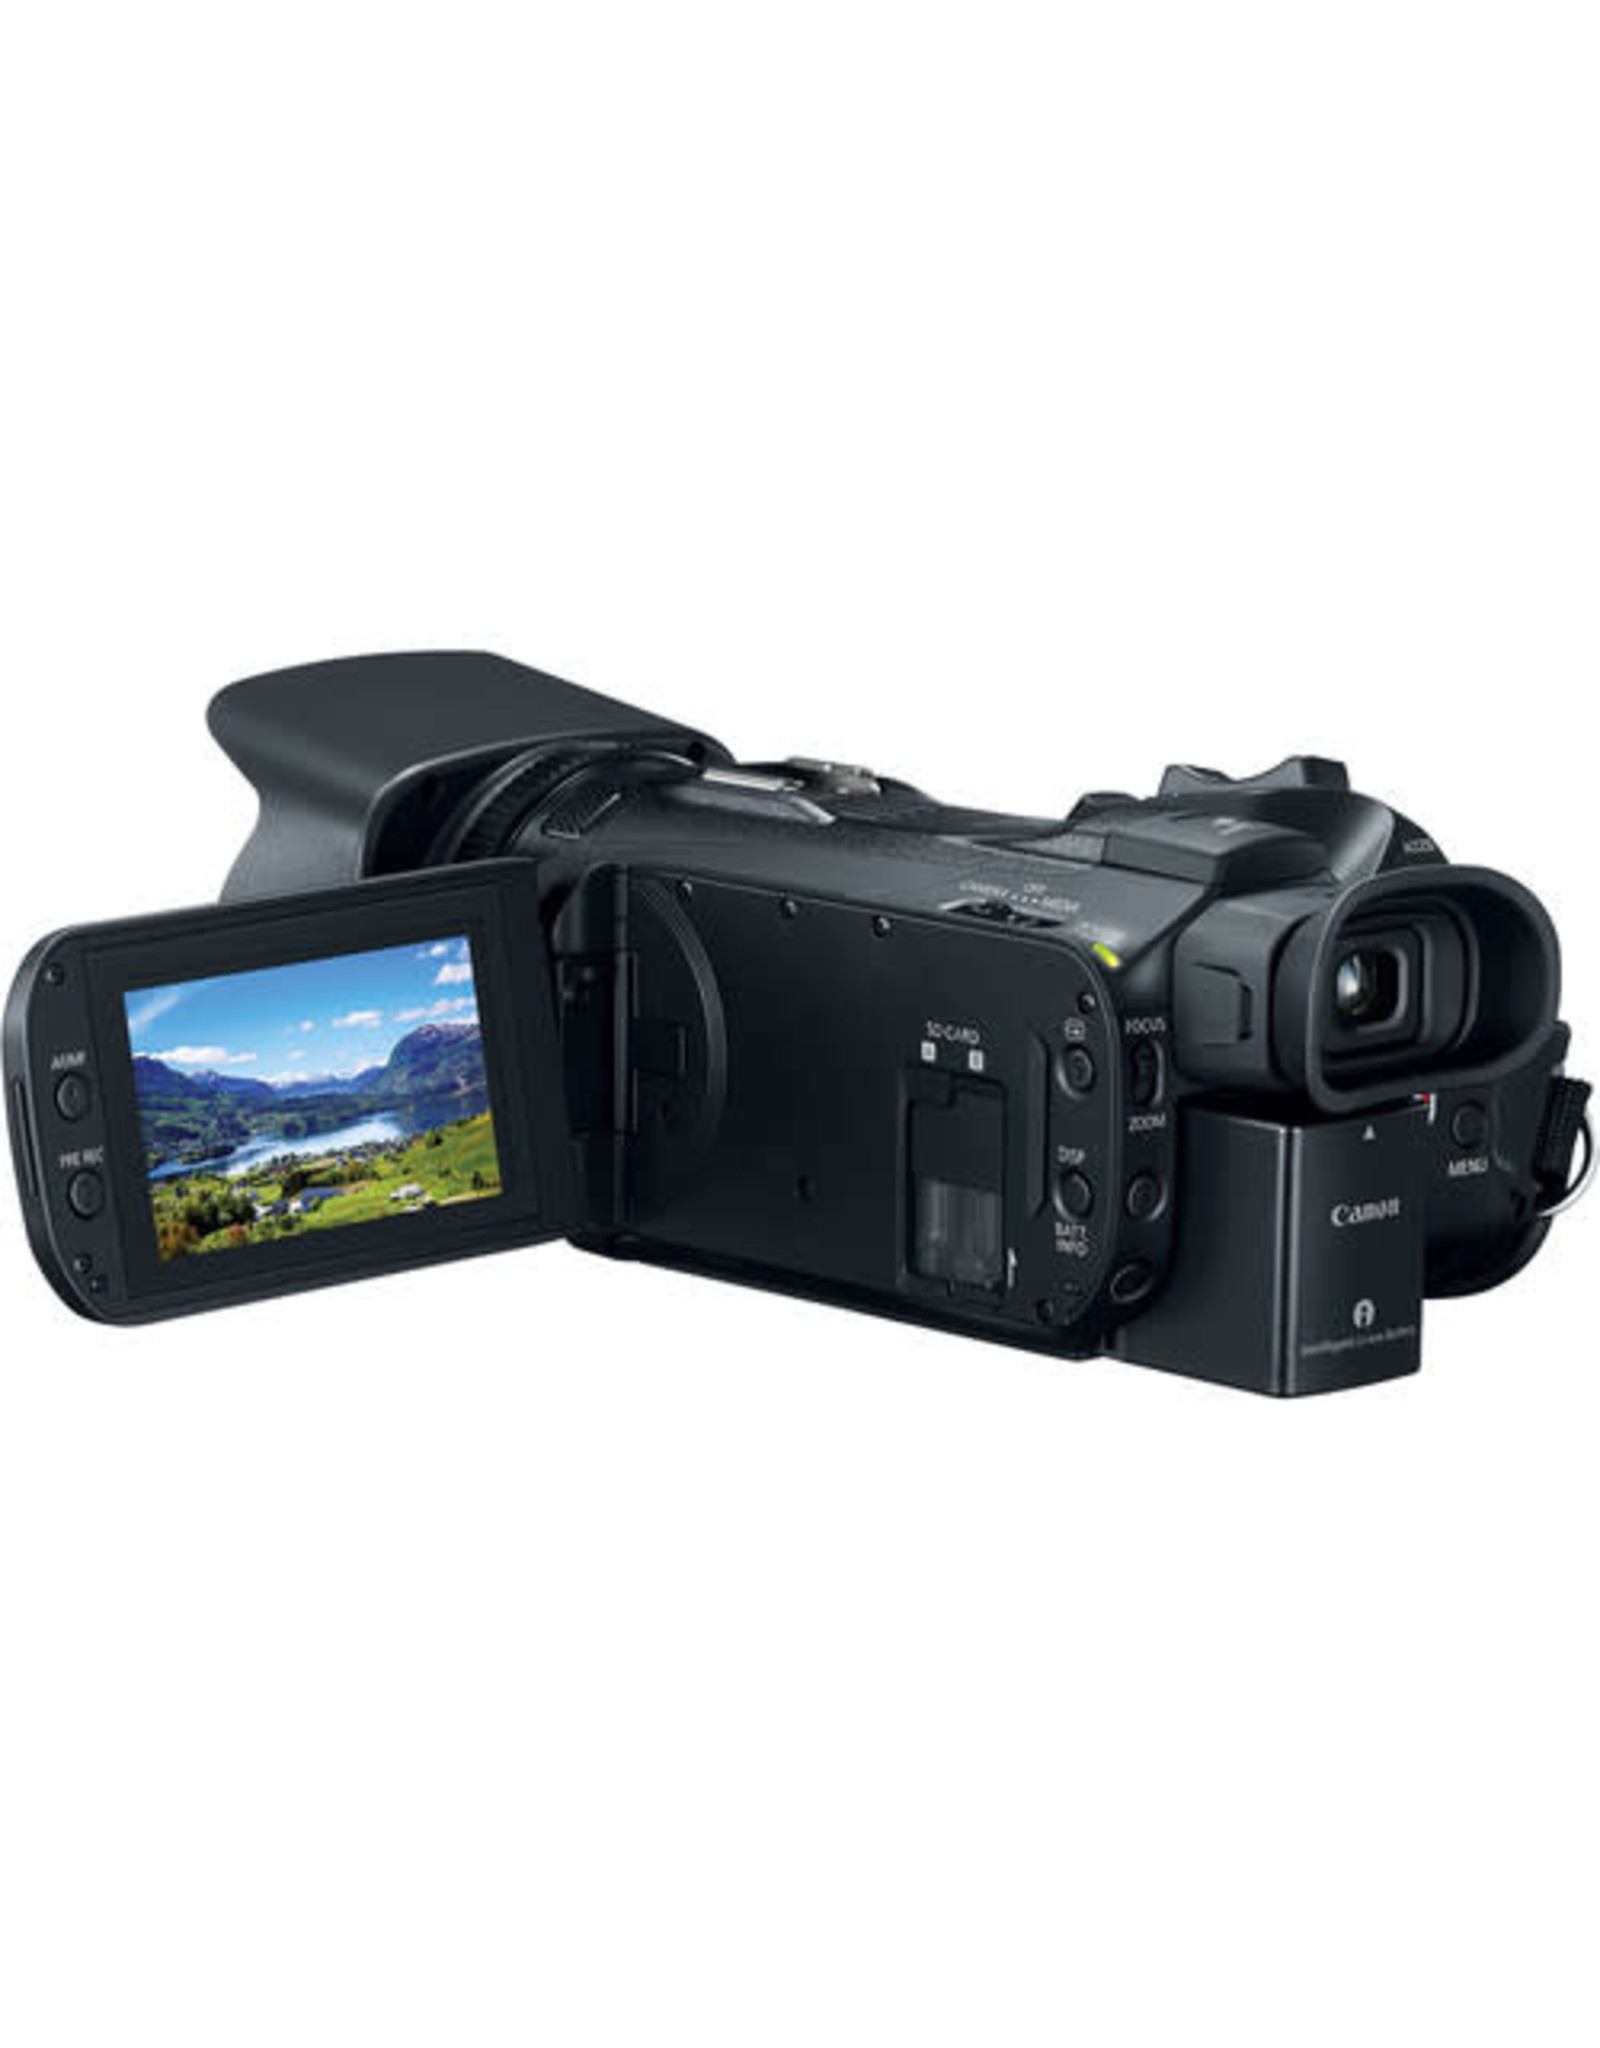 Canon Canon Vixia HF G50 UHD 4K Camcorder